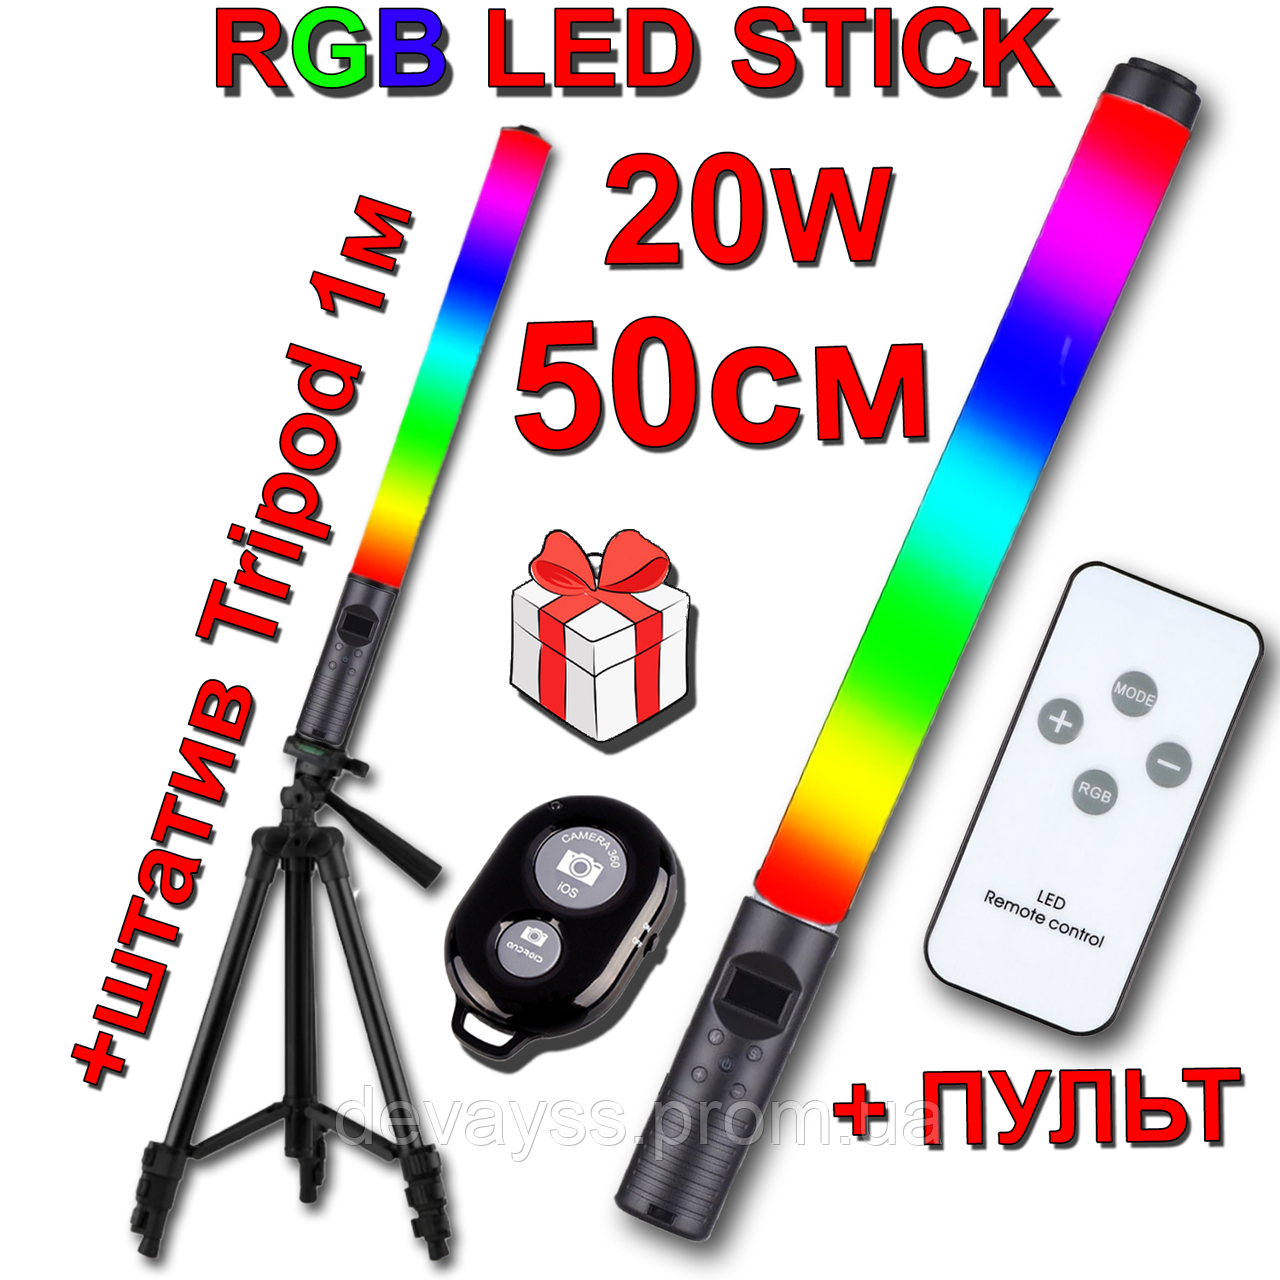 Пульт + Штатив 1м RGB LED STICK 50см 20W світильник жезл відео світло фото лампа для стик струму струму